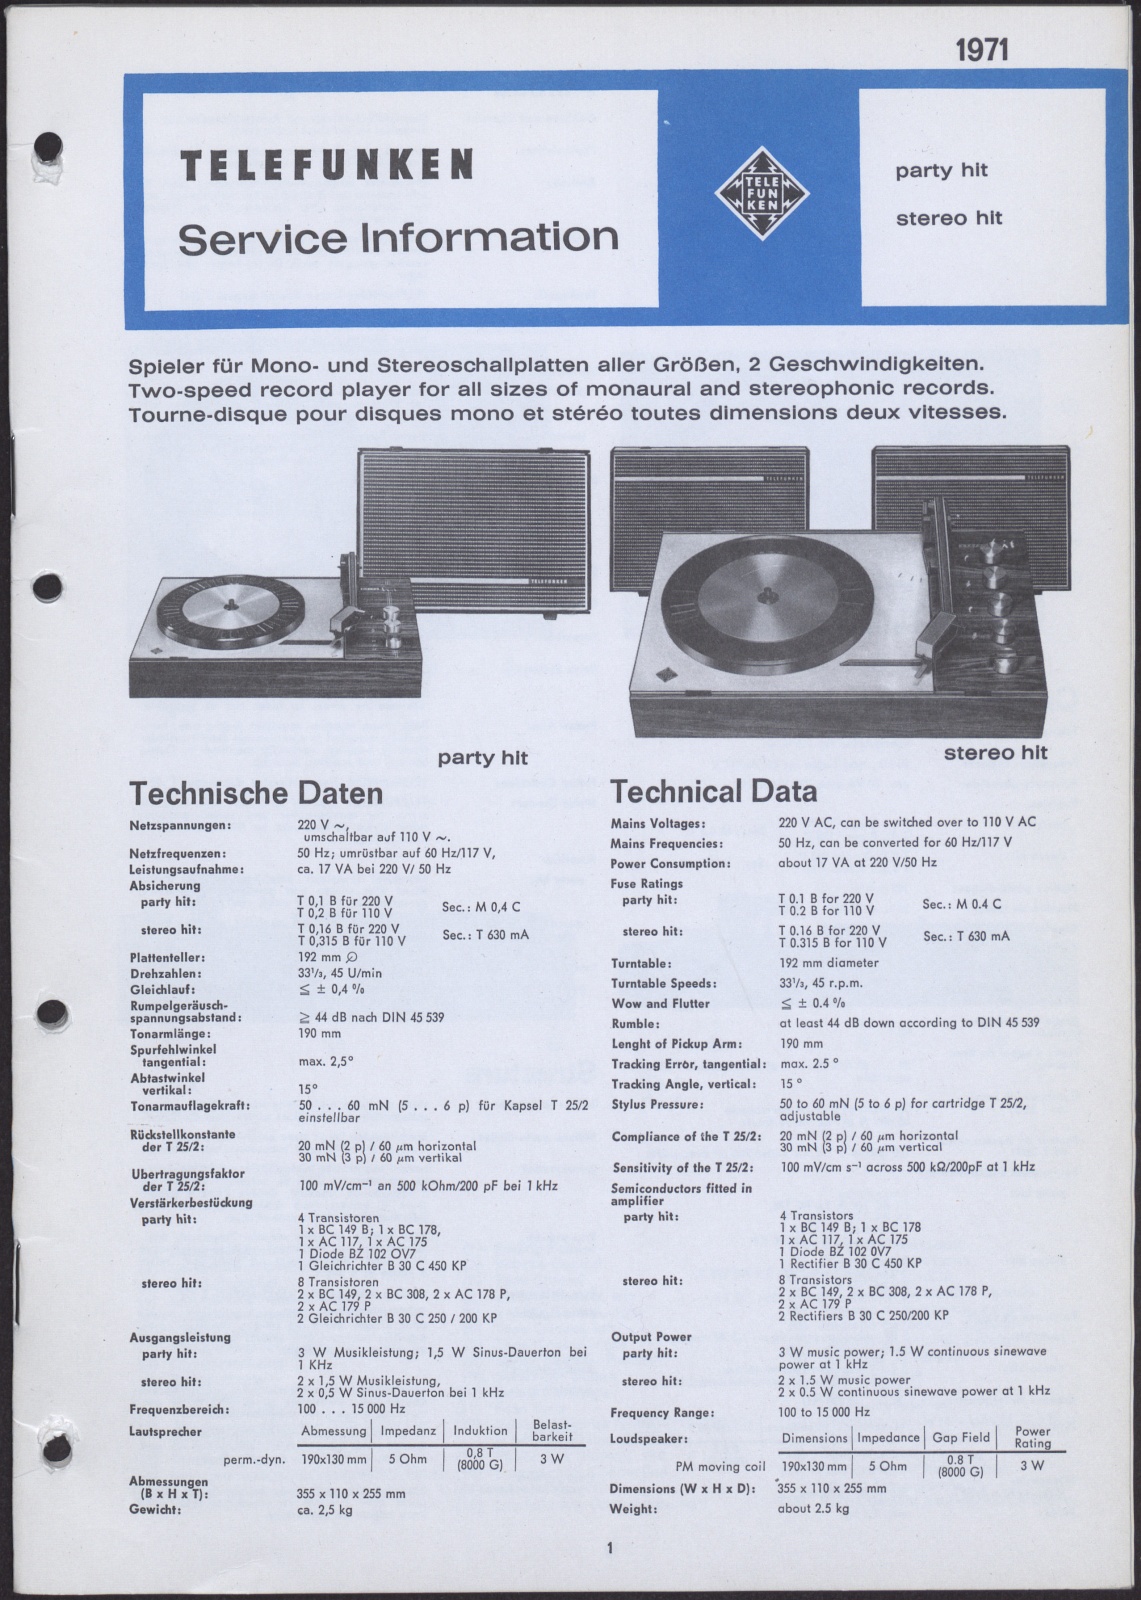 Bedienungsanleitung: Telefunken Service Information party hit und stereo hit (Stiftung Deutsches Technikmuseum Berlin CC0)